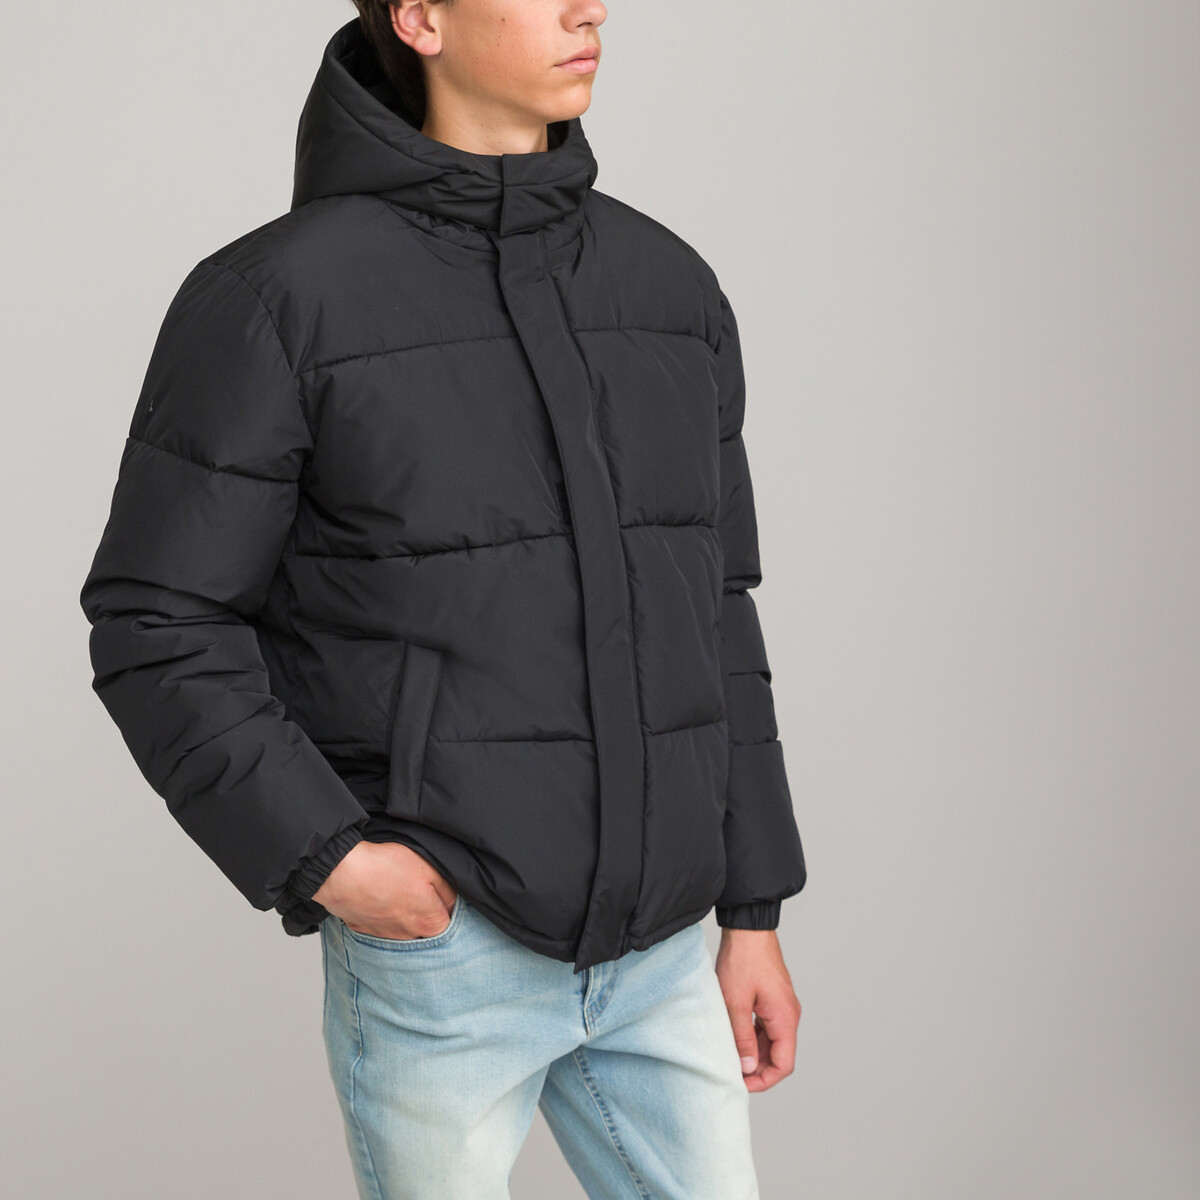 Куртка стеганая утепленная с капюшоном XS черный стеганая утепленная куртка с капюшоном